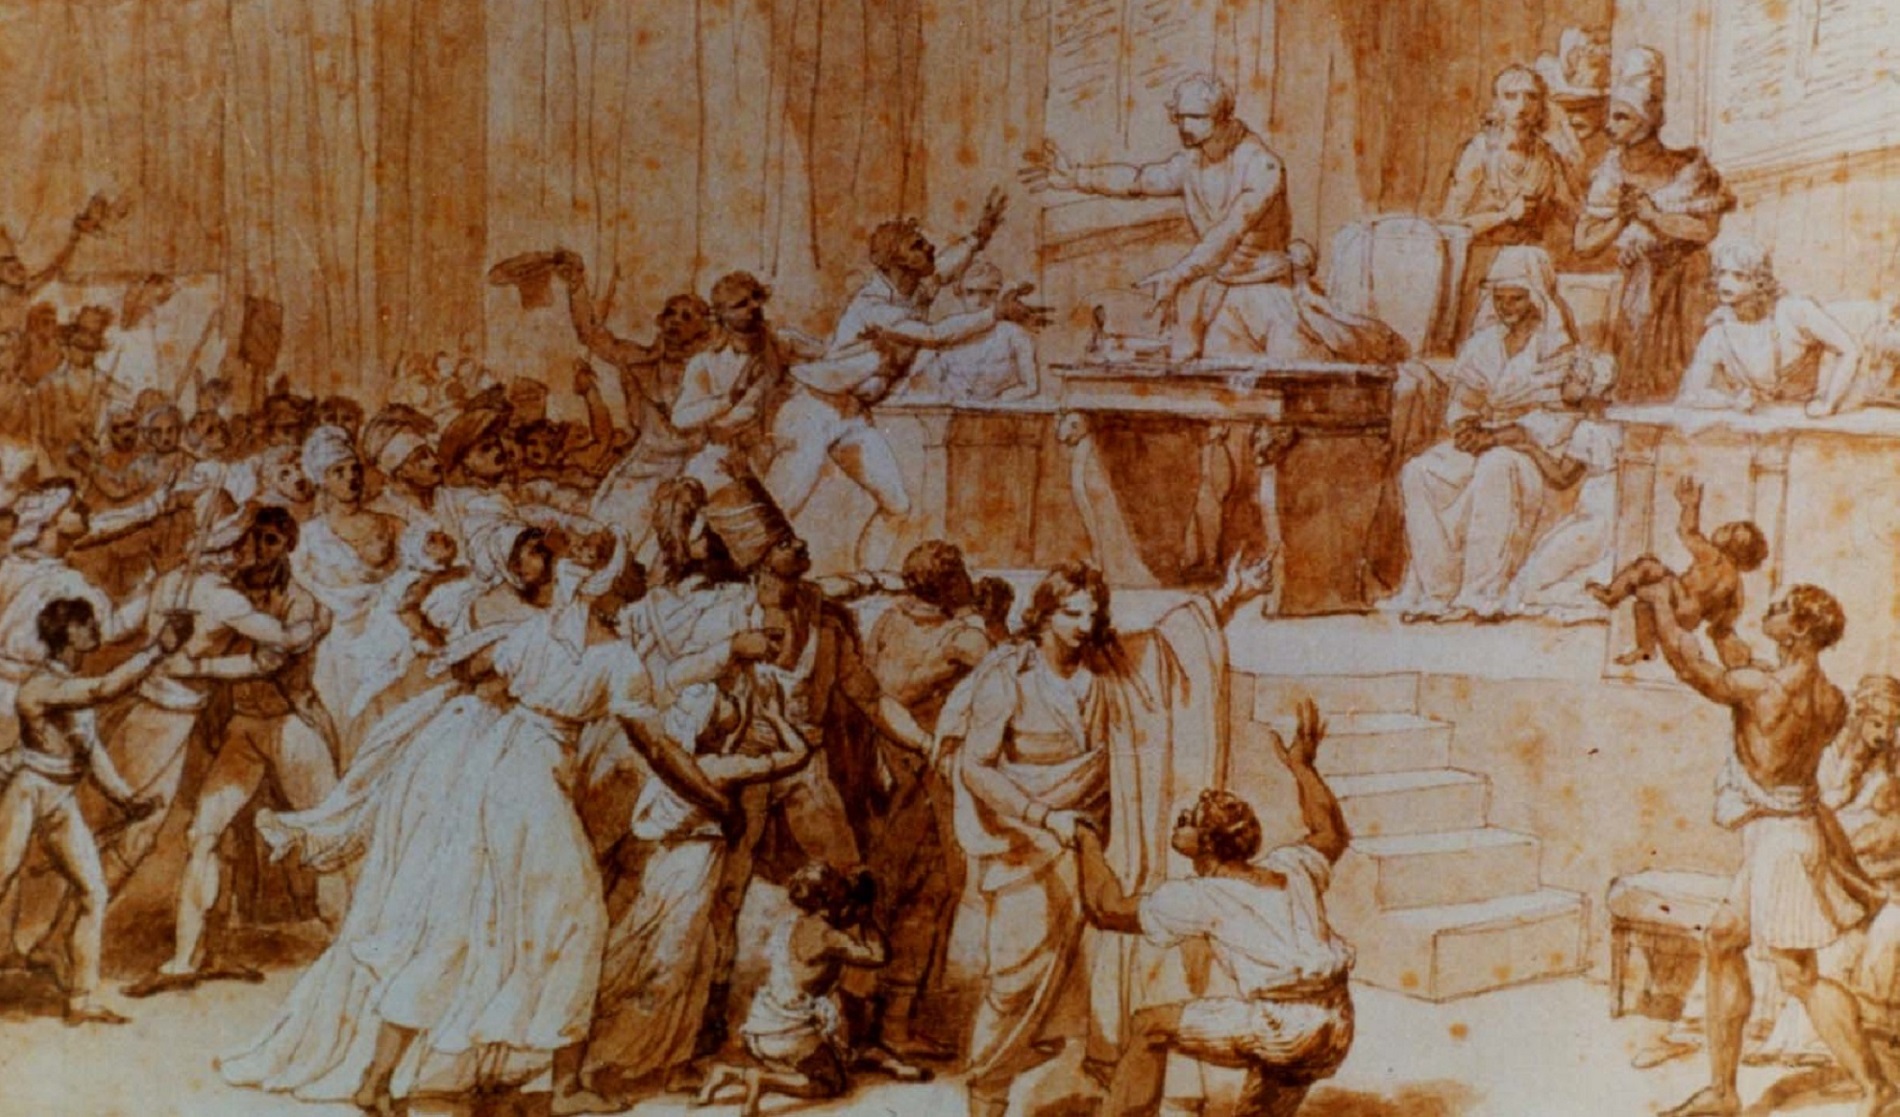 Tableau : « L'abolition de l'esclavage par la Convention nationale », le 16 pluviôse an II ou 4 février 1794, par Nicolas André Monsiau en 1794. Musée Carnavalet, Paris. © RMN-Grand Palais, Bulloz.